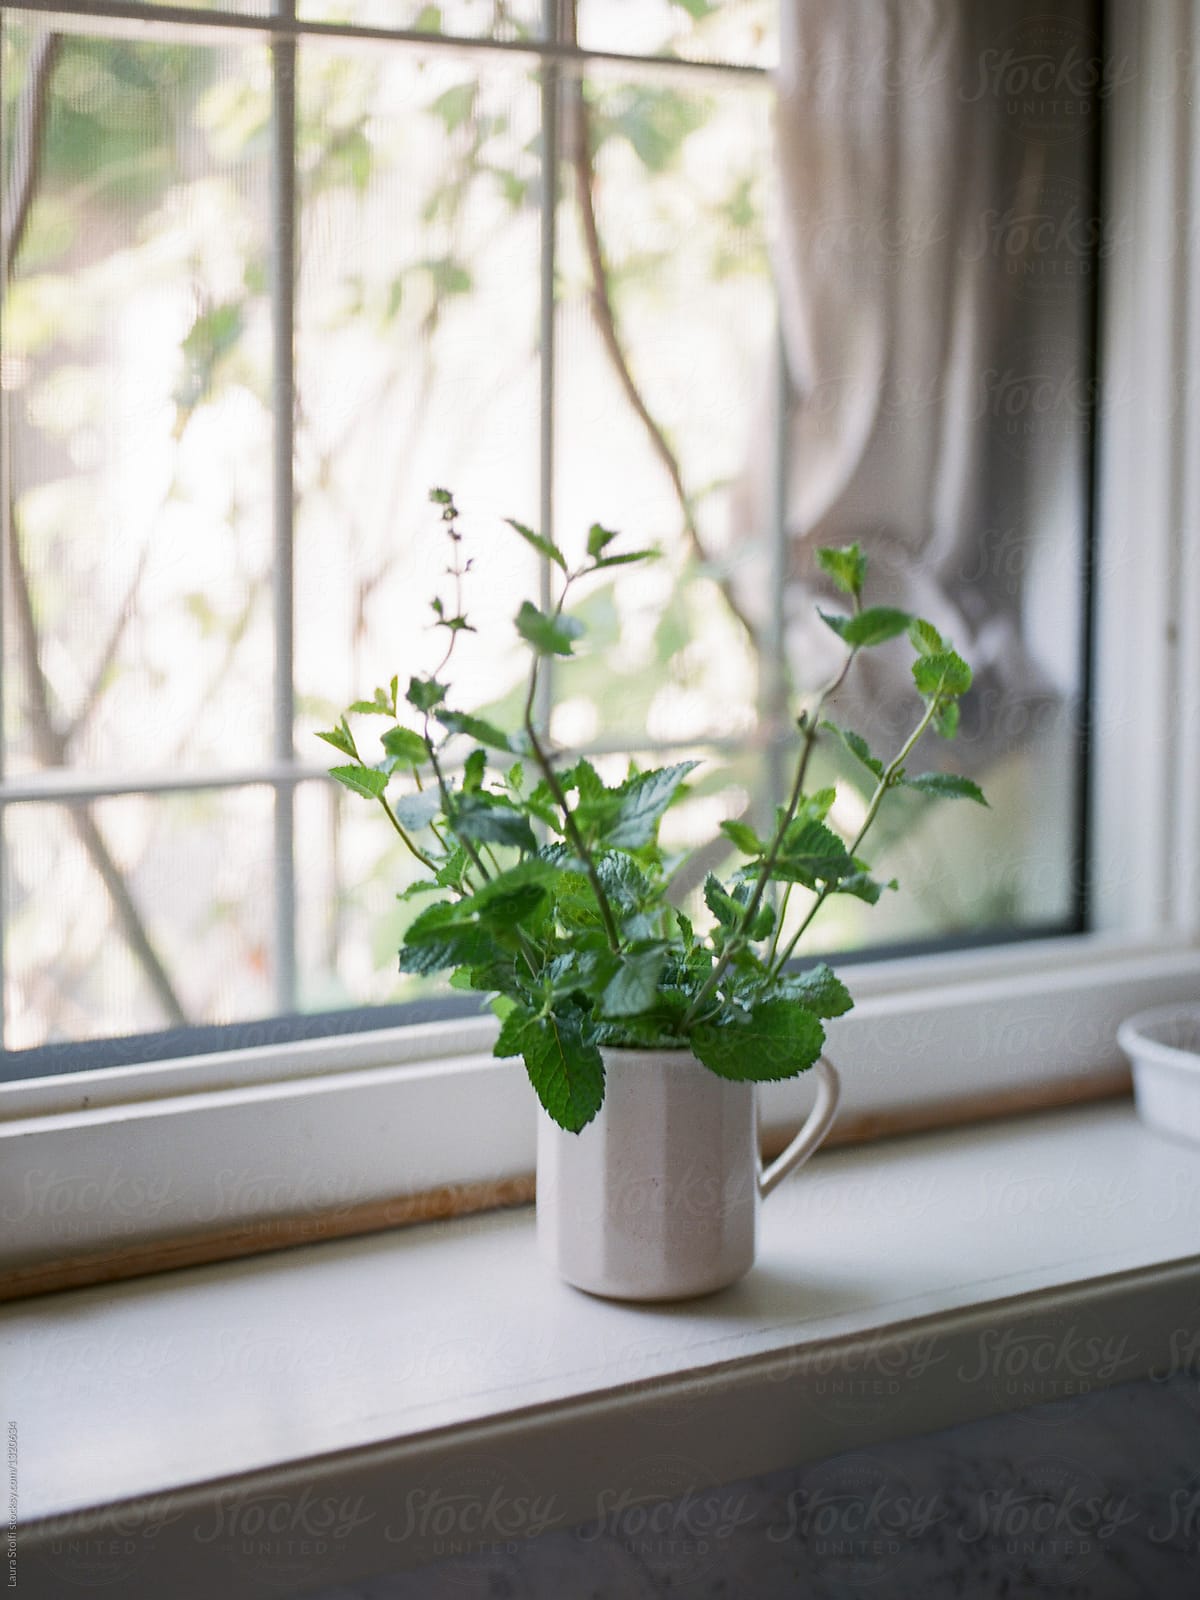 Fresh mint bouquet in porcelain cup on windowsill\
Fresh mint bo